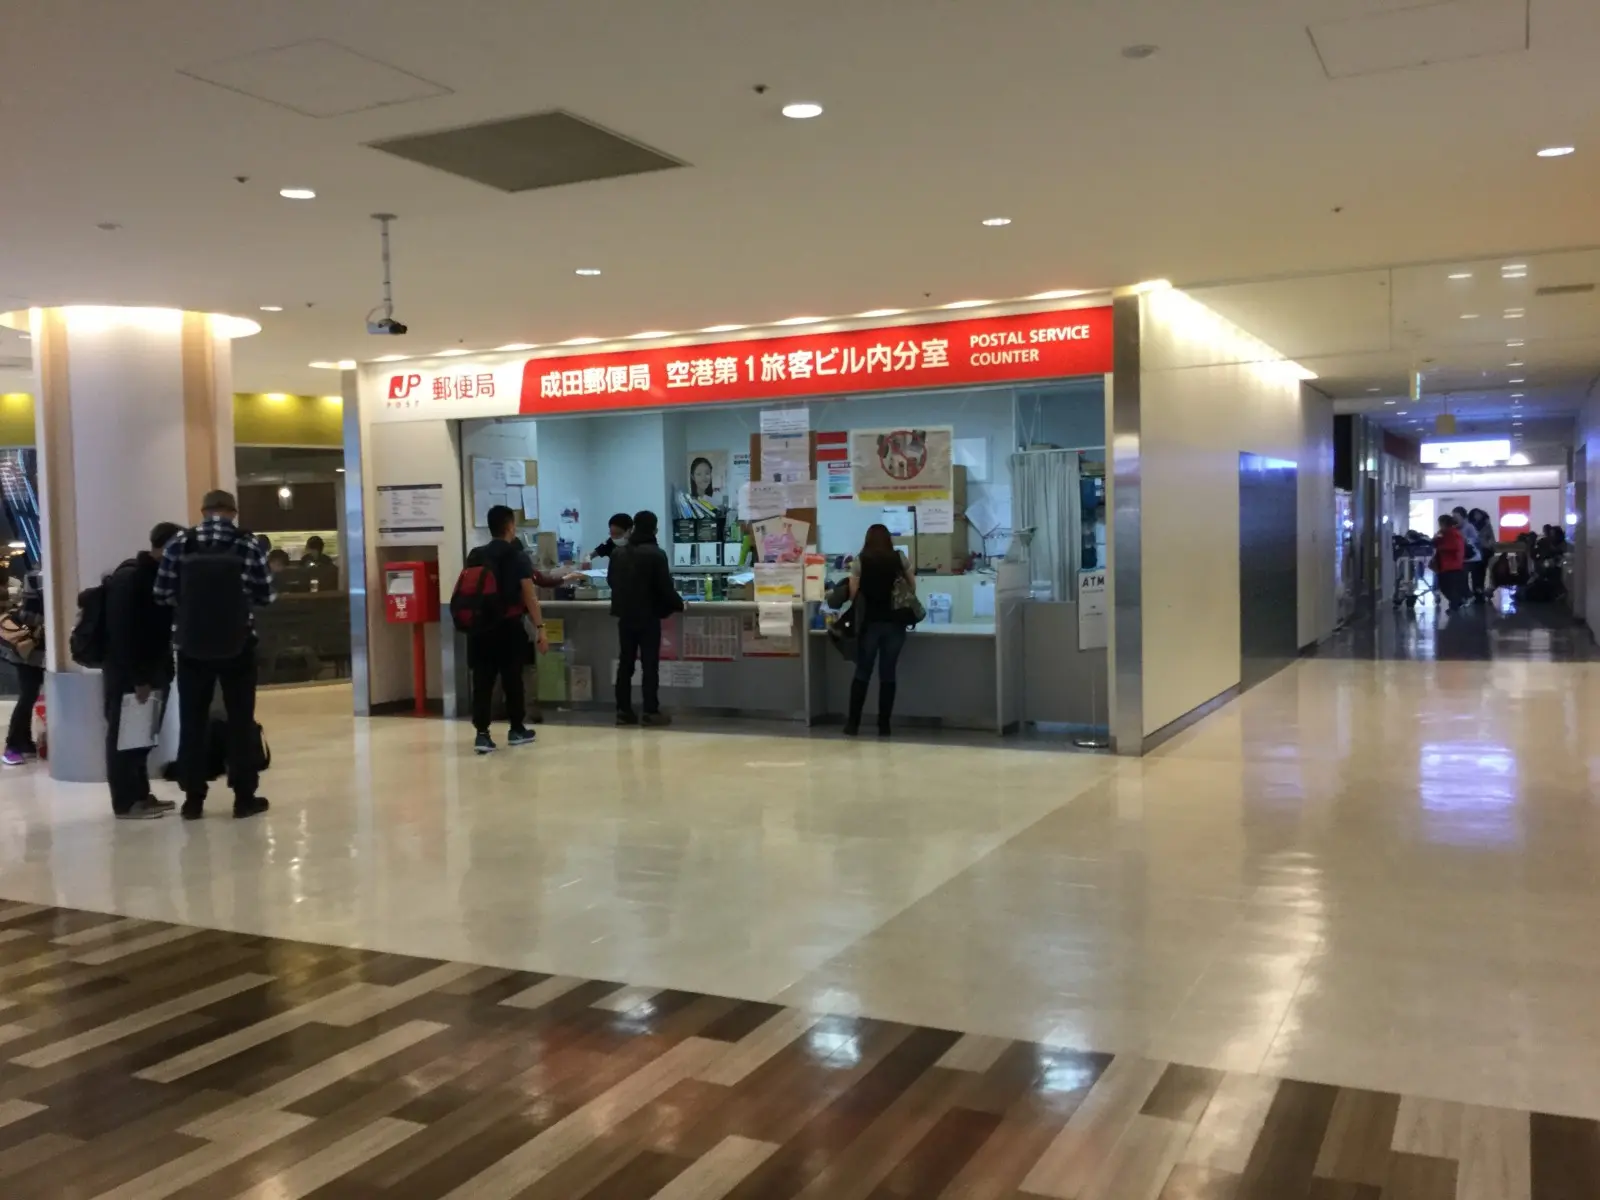 How to pickup at Narita Airport 1,2 Terminal Post office